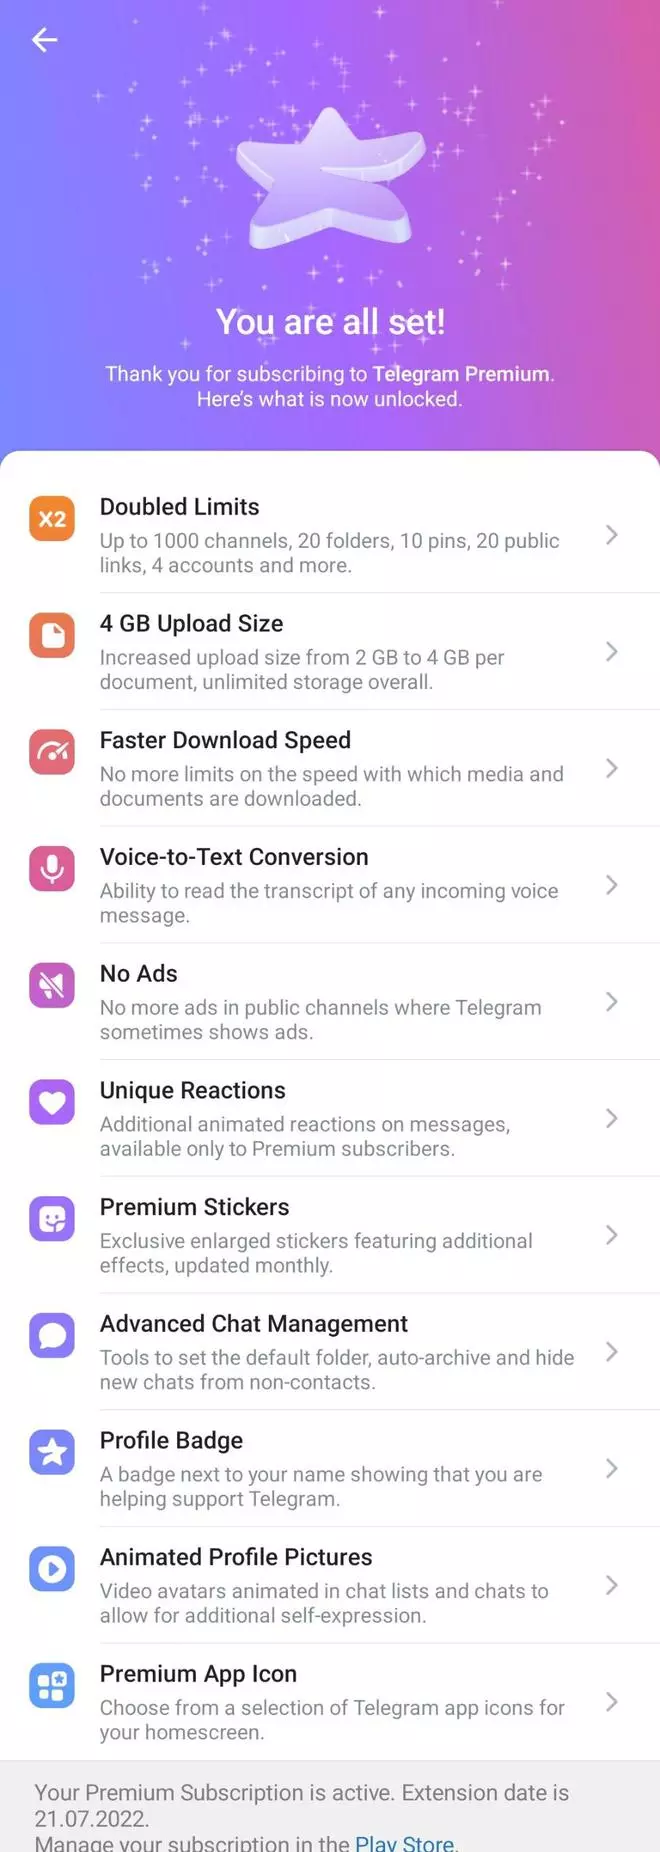 Exciting features of Telegram Premium 